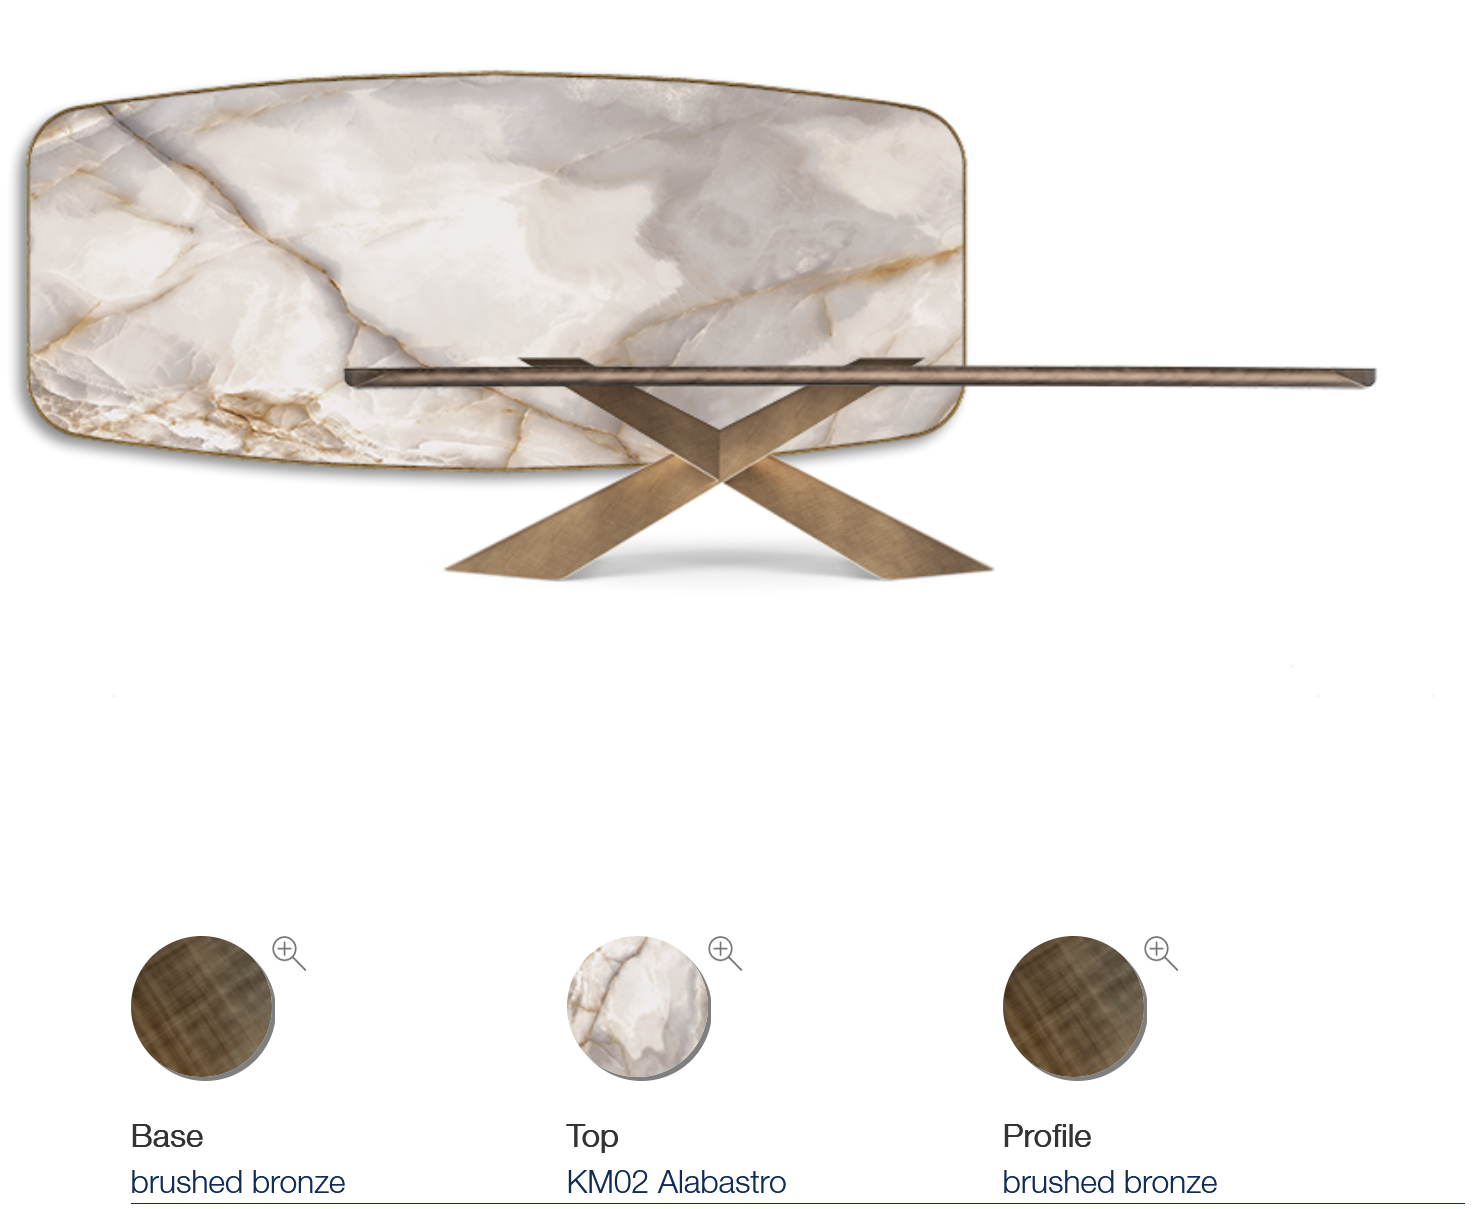 Luxusní jídelní stůl s keramickou deskou